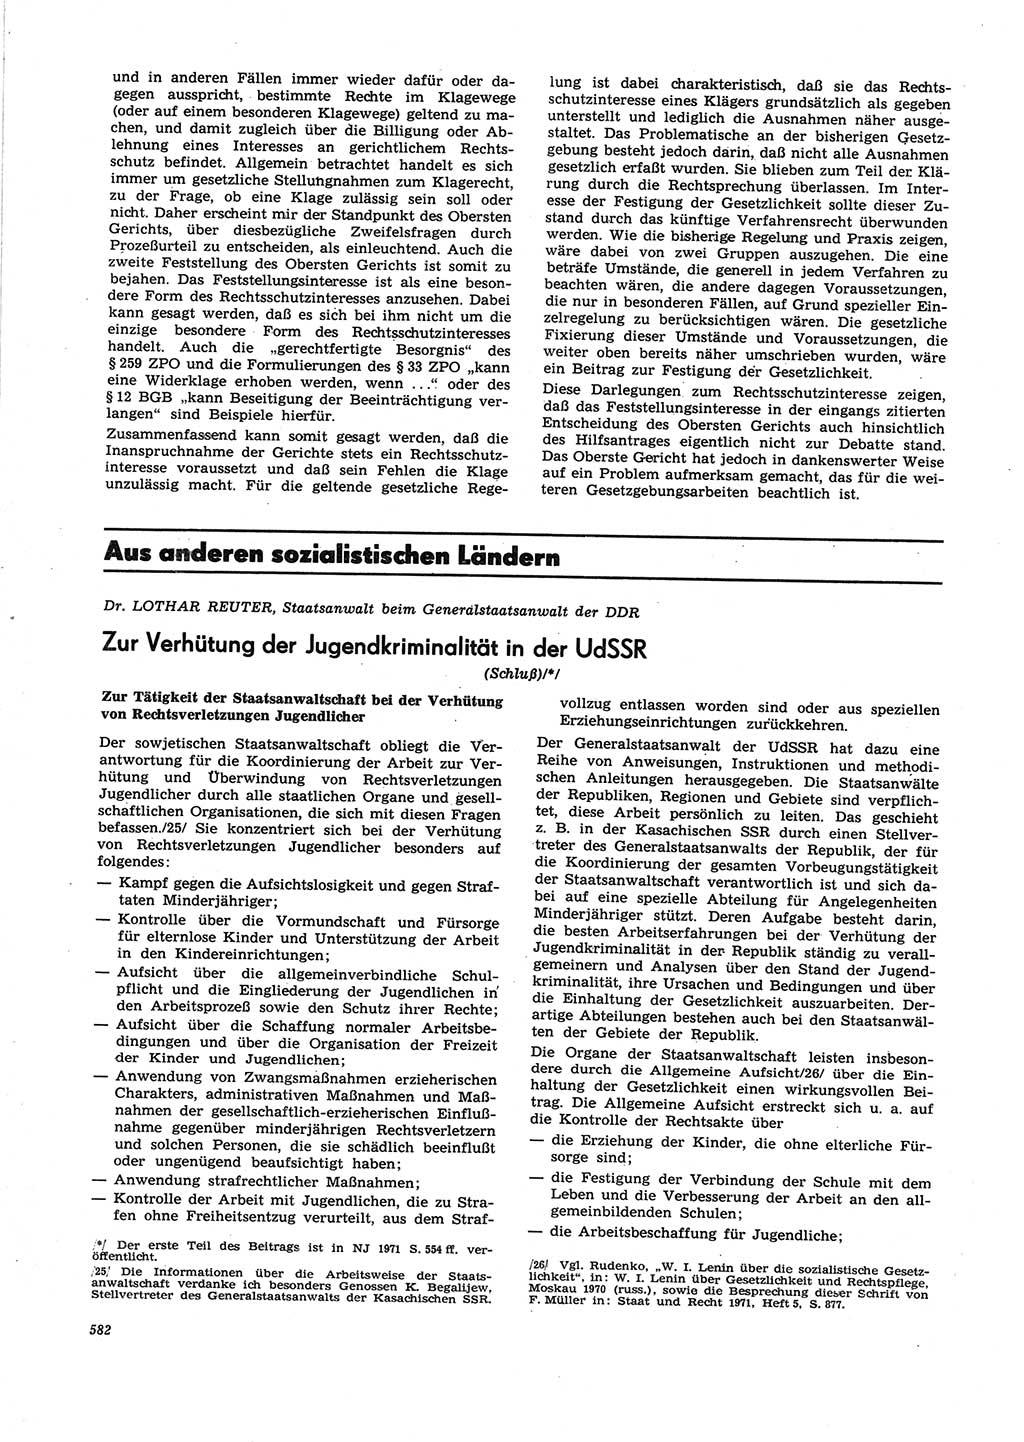 Neue Justiz (NJ), Zeitschrift für Recht und Rechtswissenschaft [Deutsche Demokratische Republik (DDR)], 25. Jahrgang 1971, Seite 582 (NJ DDR 1971, S. 582)